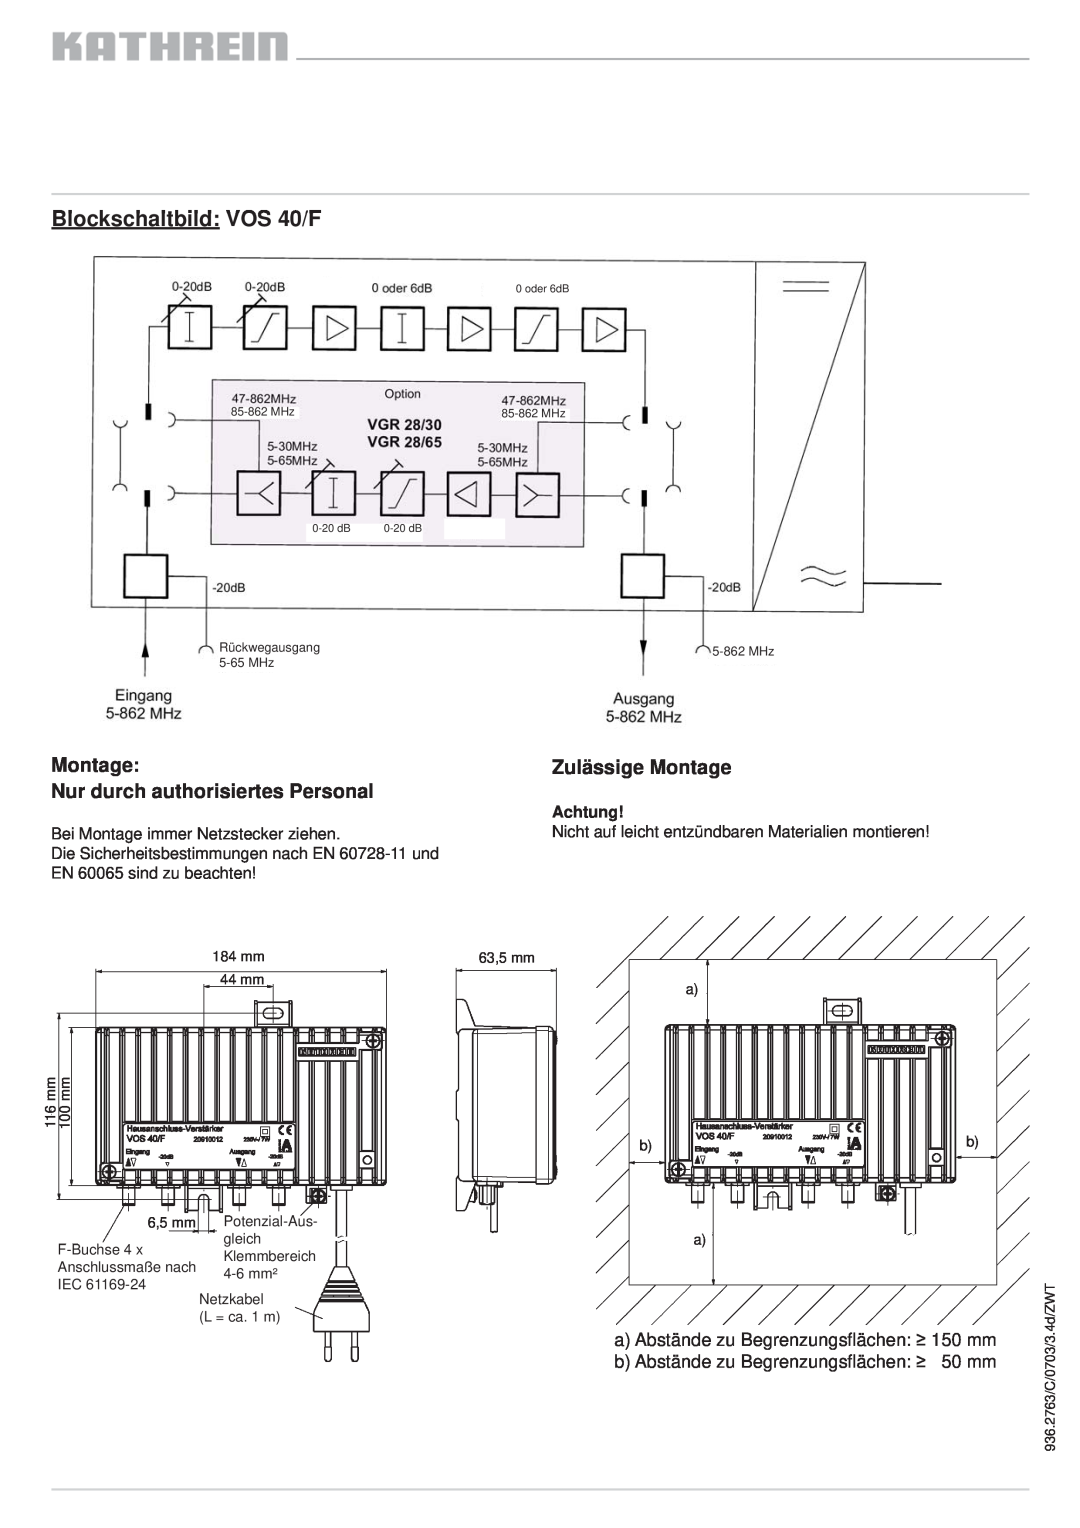 Kathrein VOS 30/F manual Blockschaltbild VOS 40/F, Zulässige Montage, Nur durch authorisiertes Personal, Achtung 